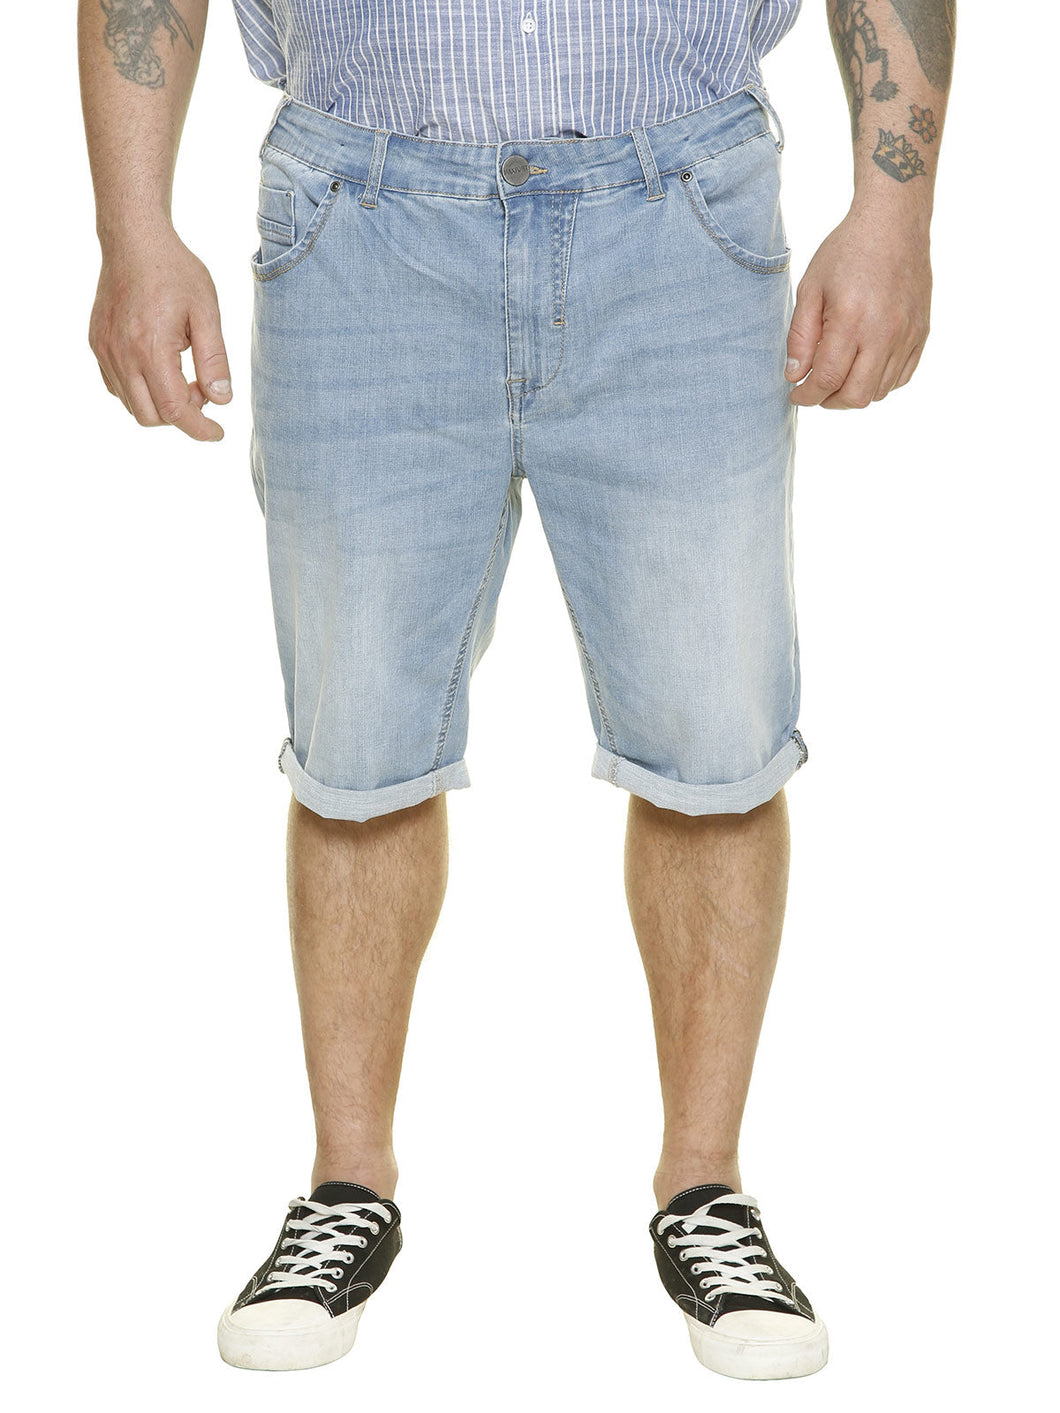 Kratke RAZTEGLJIVE jeans hlače MAXFORT MAX Baldo konfekcijske številke 60 64 66 74 76 78 zadnji kosi